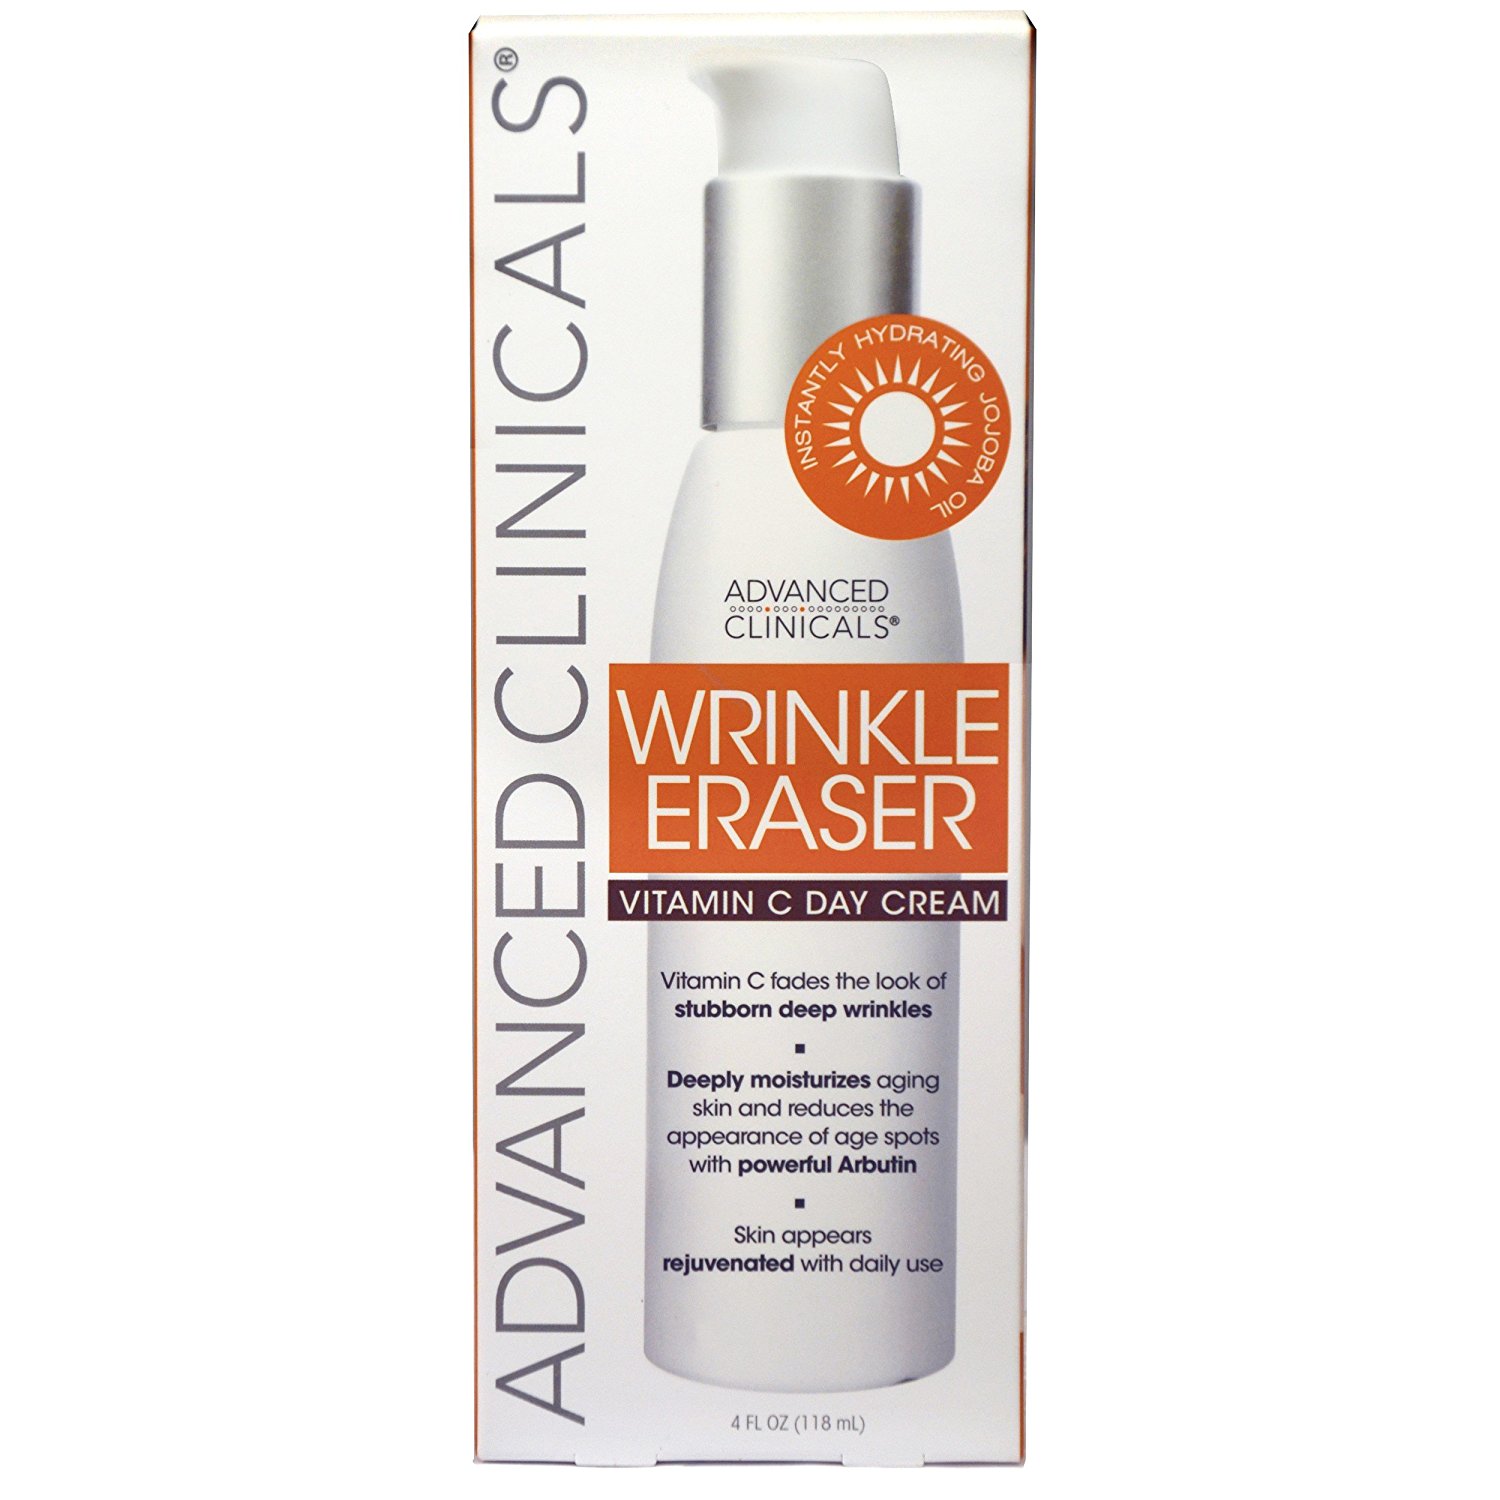 Advanced Clinicals Wrinkle Eraser Vitamin C Cream.